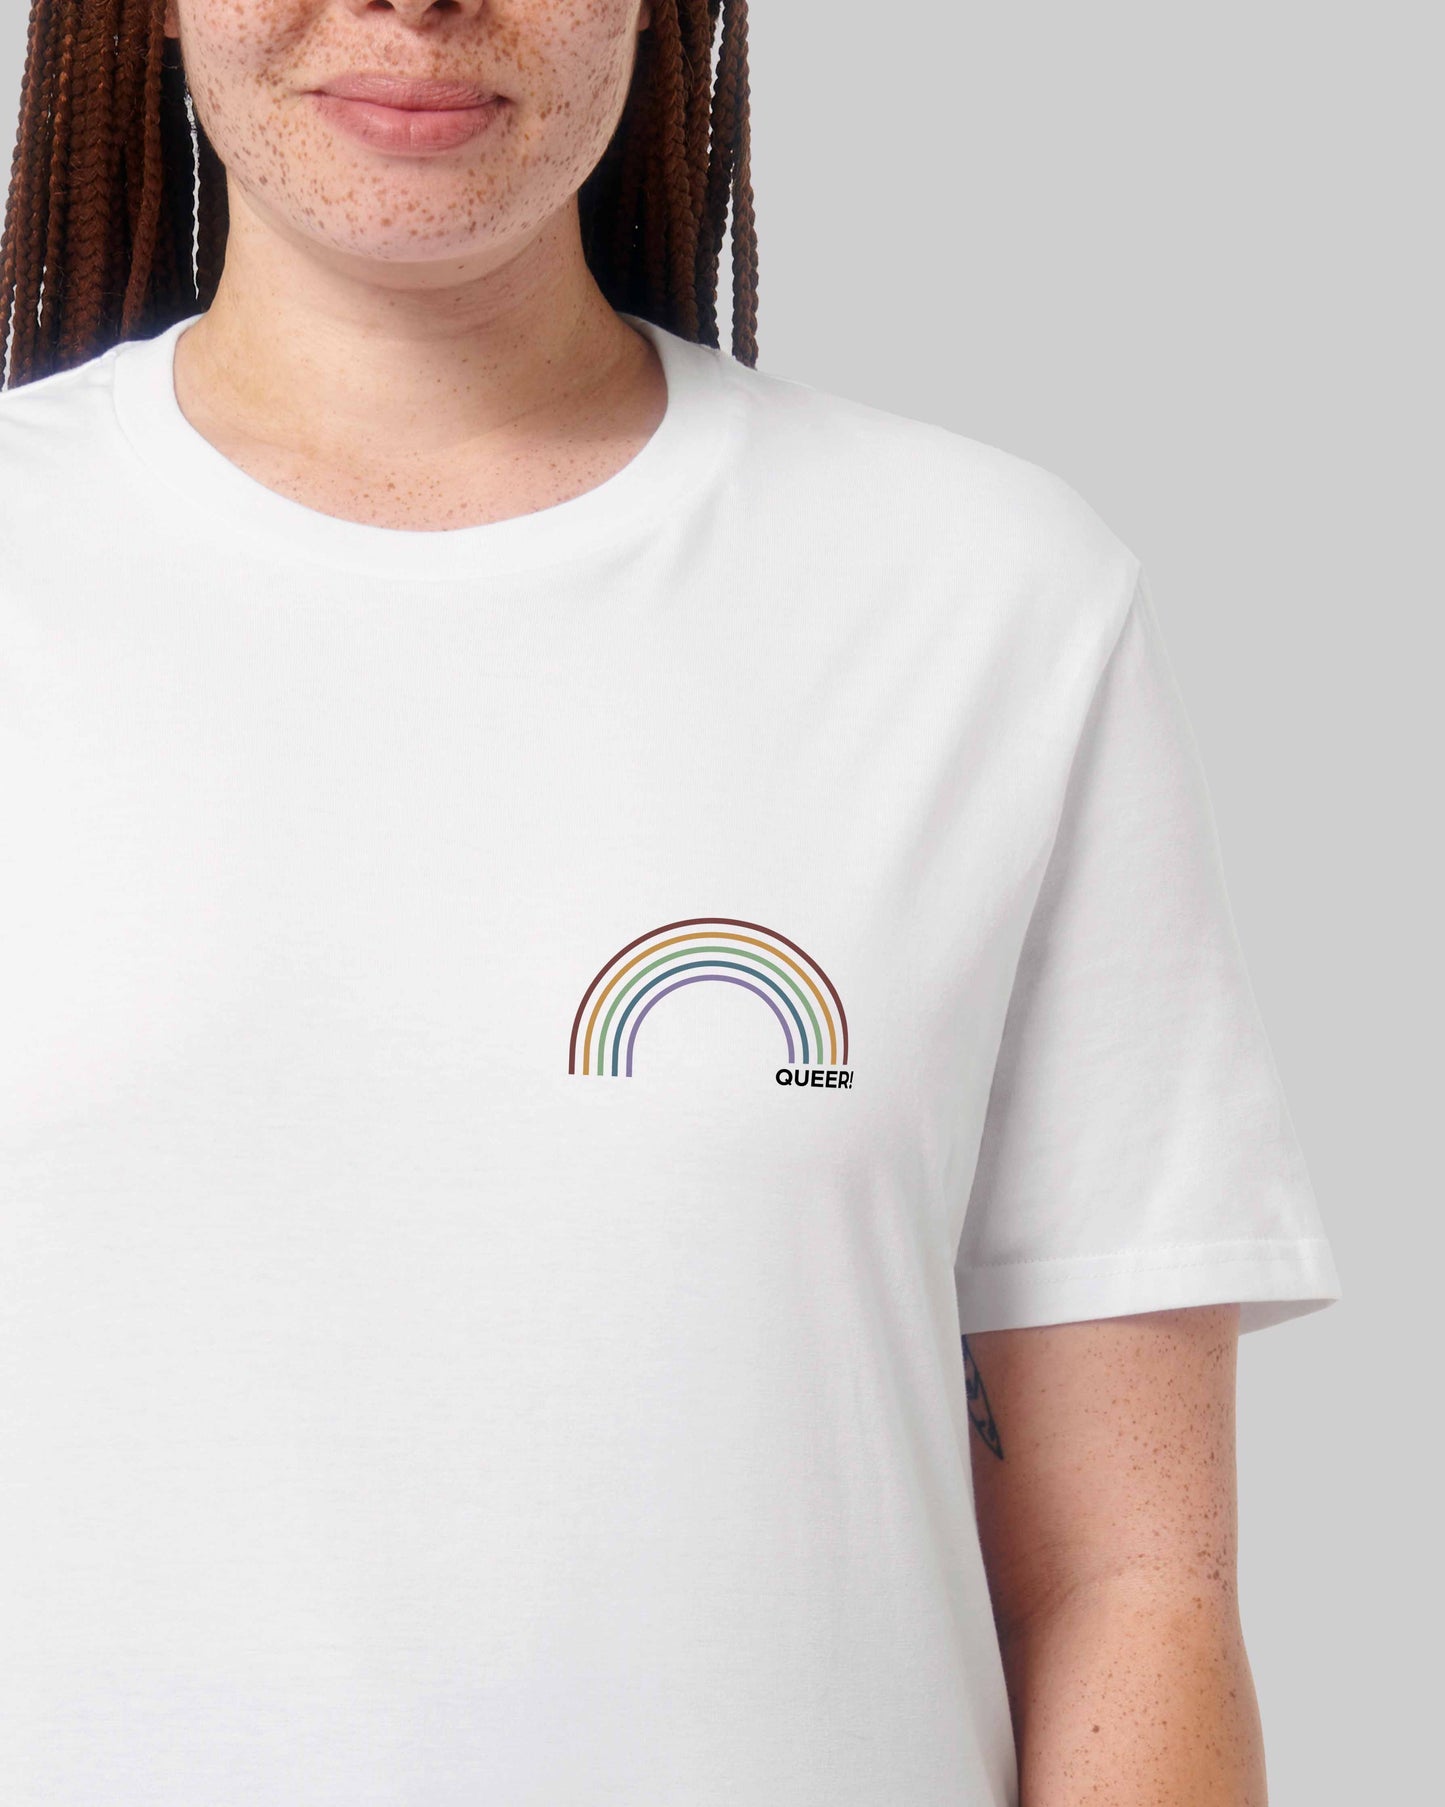 EINHORST® unisex Organic Shirt in Weiß mit dem Motiv "queer Regenbogen" in der Kombination bunter Regenbogen mit schwarzer Schrift, Bild von weiblicher Person mit Shirt